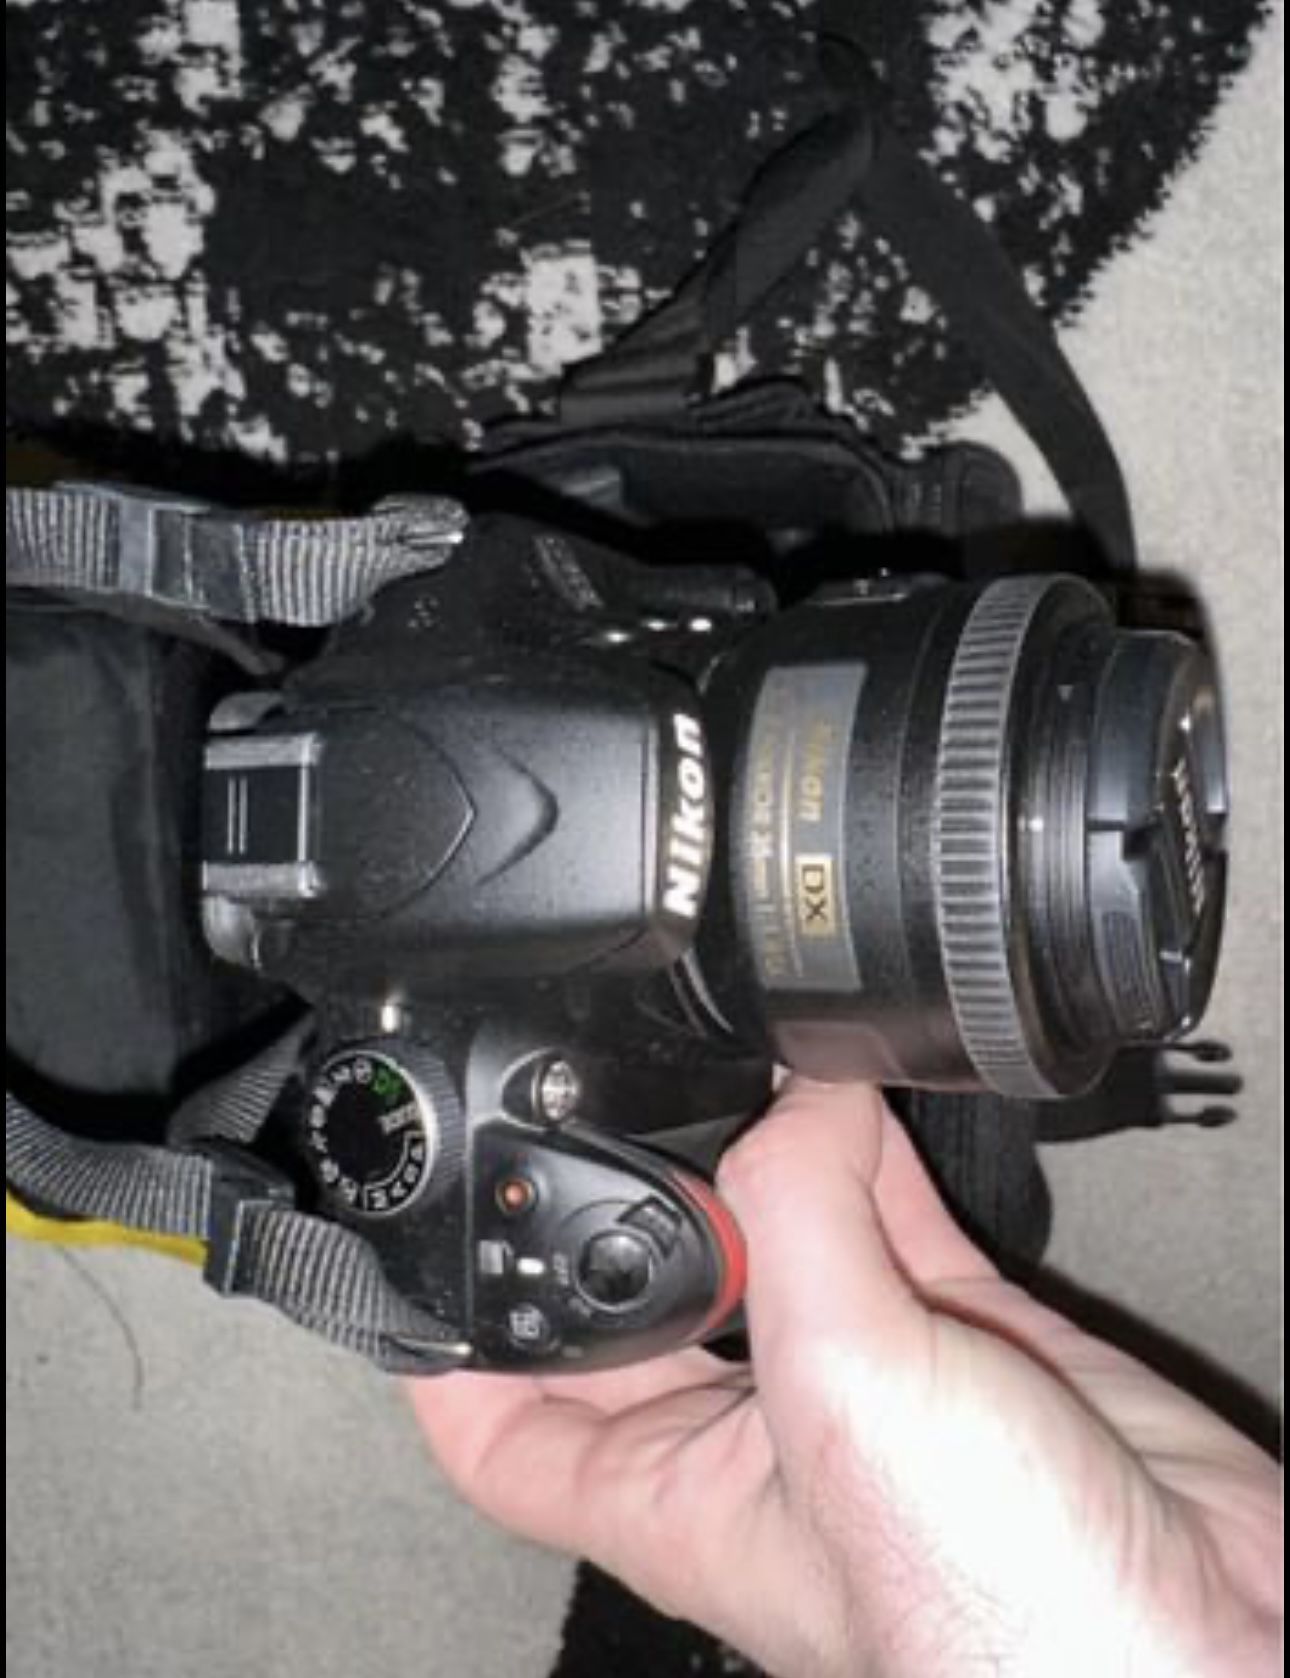 klipning i live Kommunikationsnetværk Nikon D3200 24.2 MP CMOS Digital SLR with 18-55mm VR and 55-200mm Non-VR DX  Zoom Lenses for Sale in Alafaya, FL - OfferUp